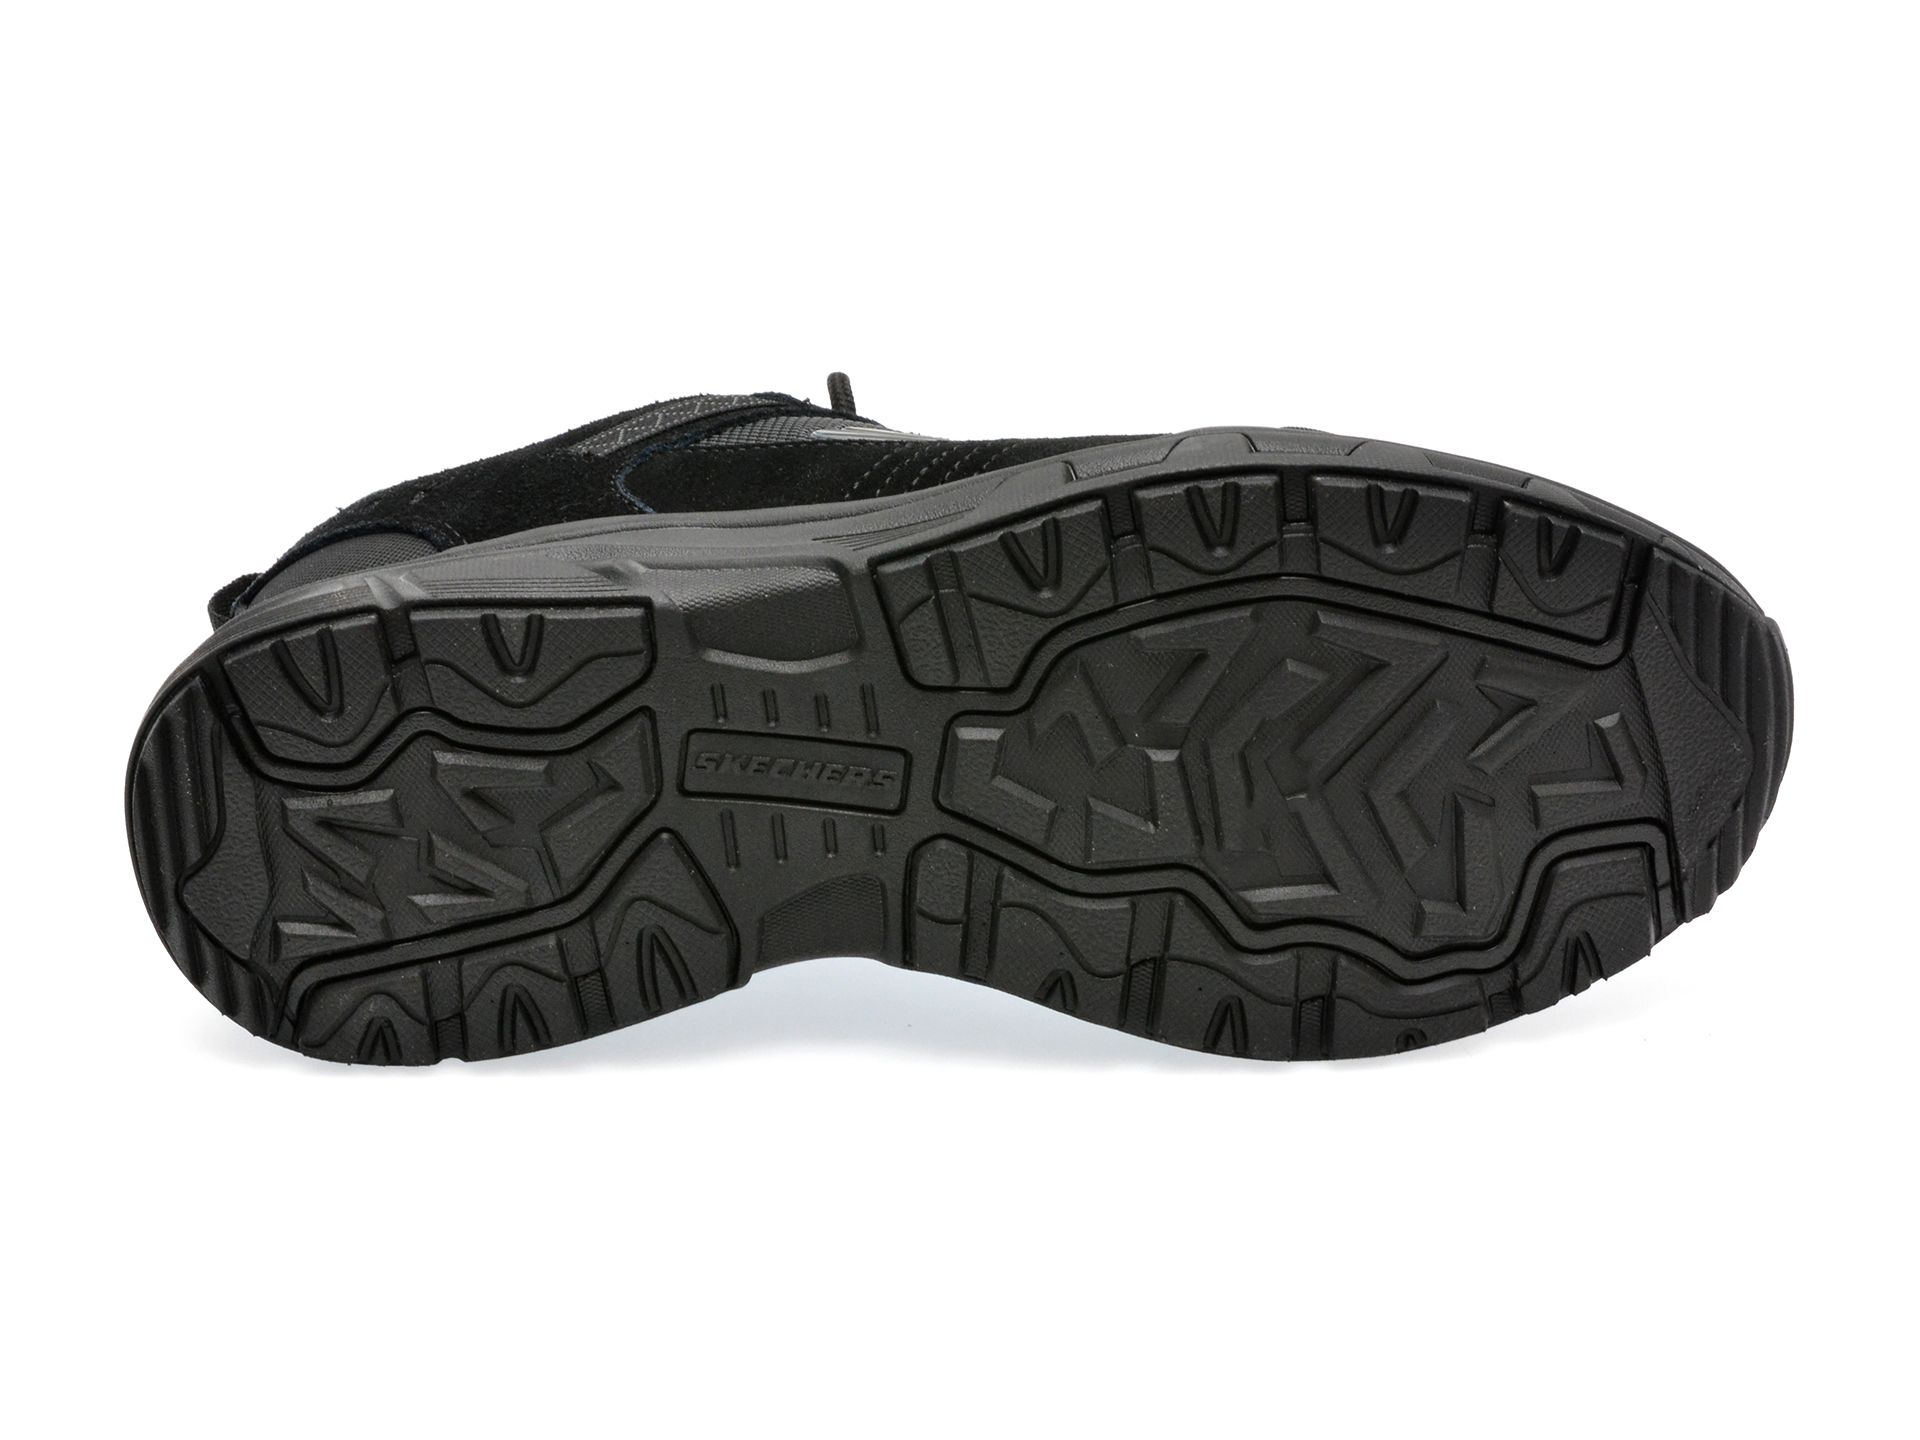 Pantofi SKECHERS negri, OAK CANYON, din piele intoarsa si material textil